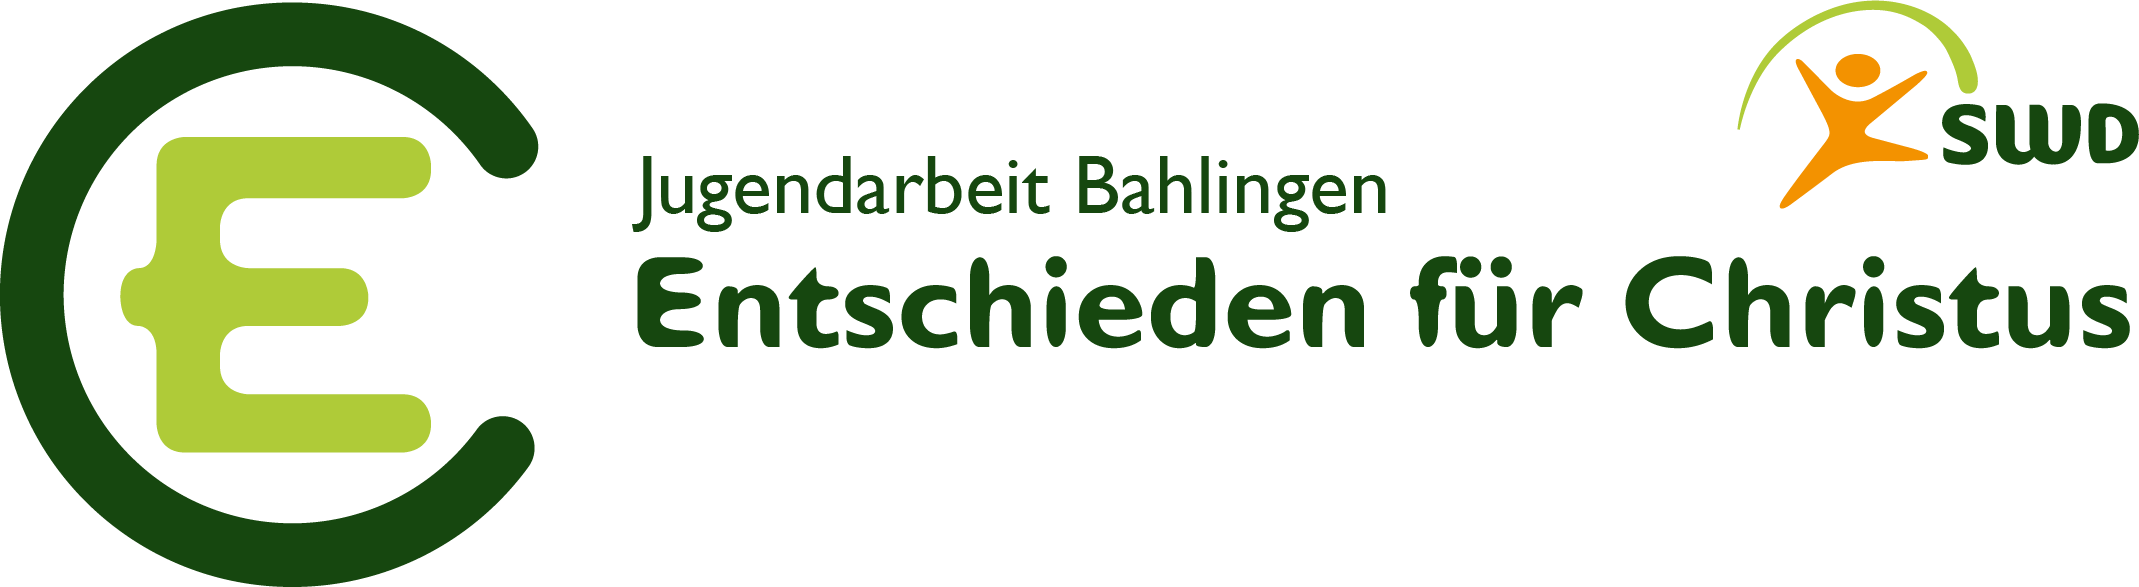 EC Bahlingen